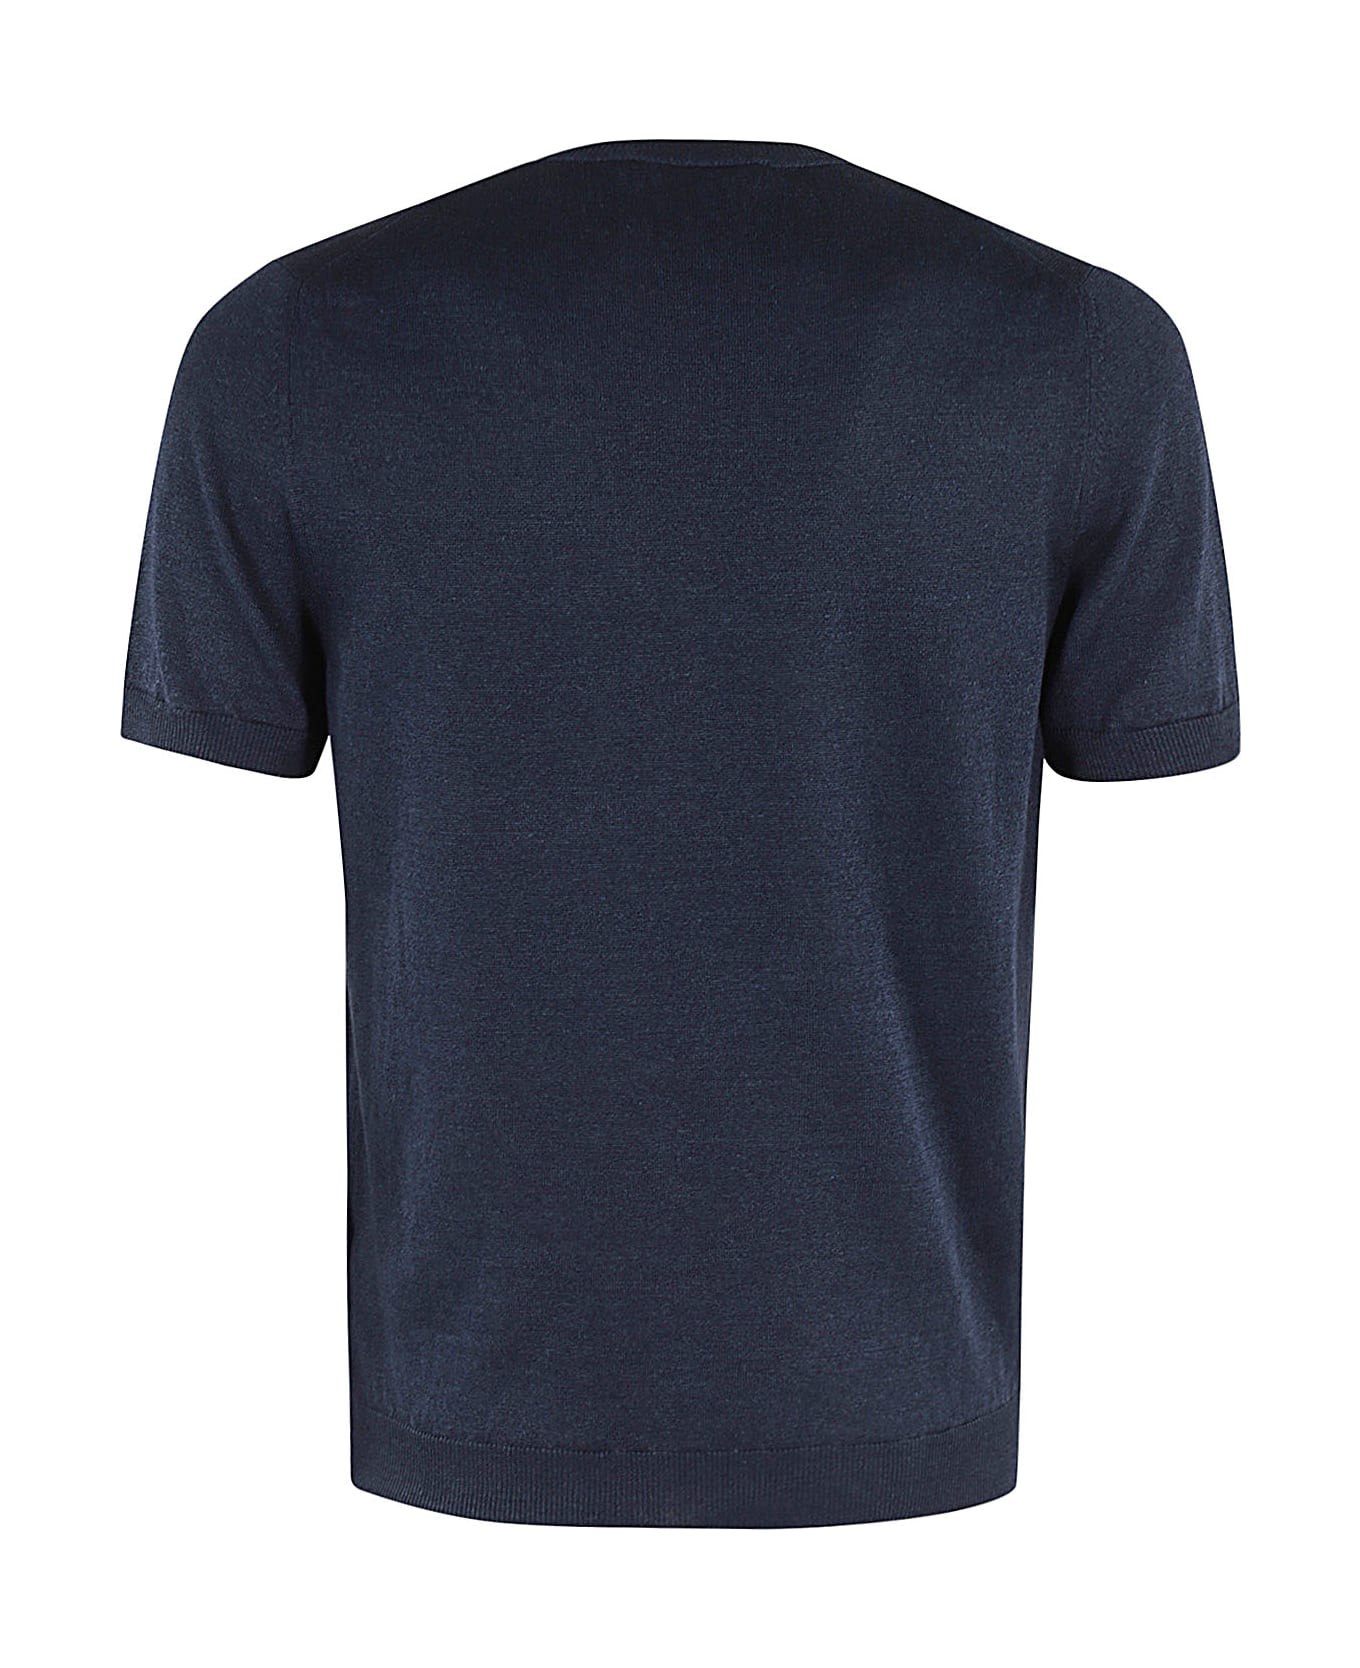 Tagliatore T Shirt - Blu シャツ